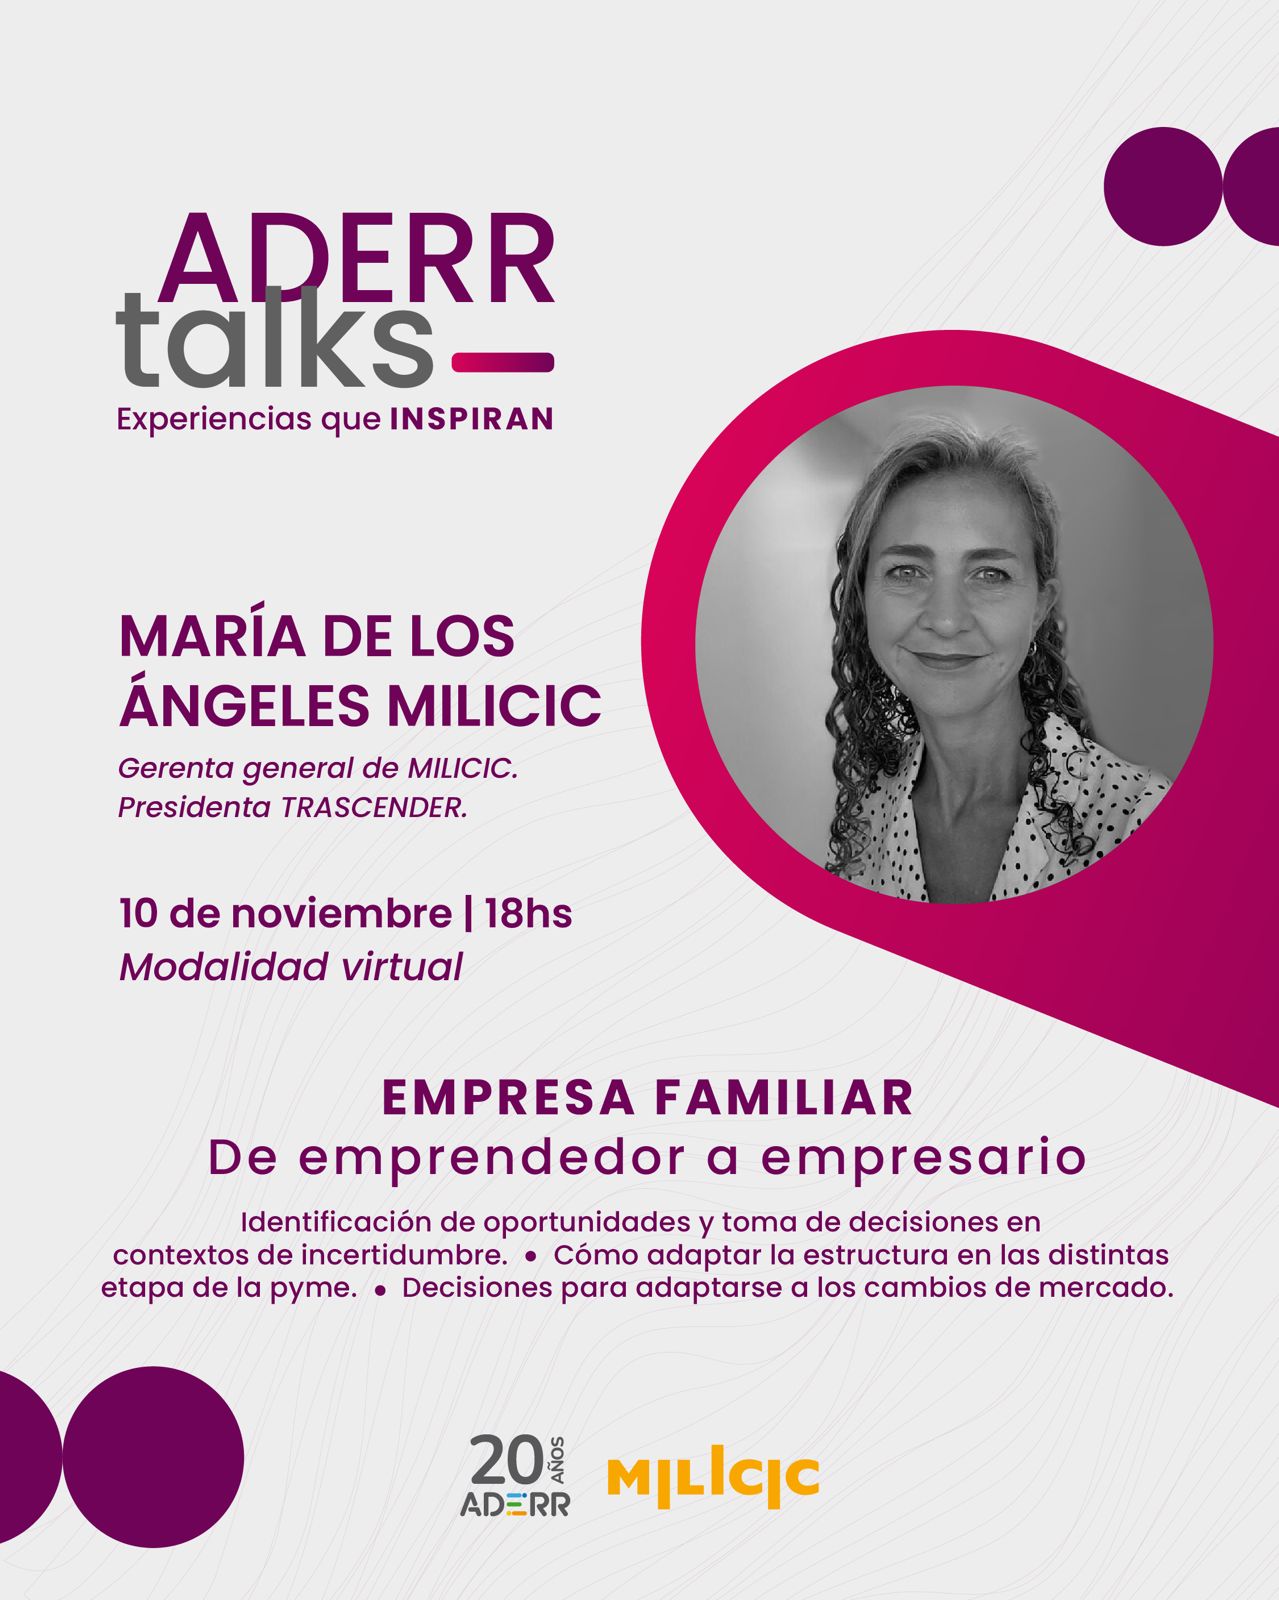 LLEGA UNA NUEVA EDICIÓN DE ADERR TALKS con María de los Ángeles Milicic